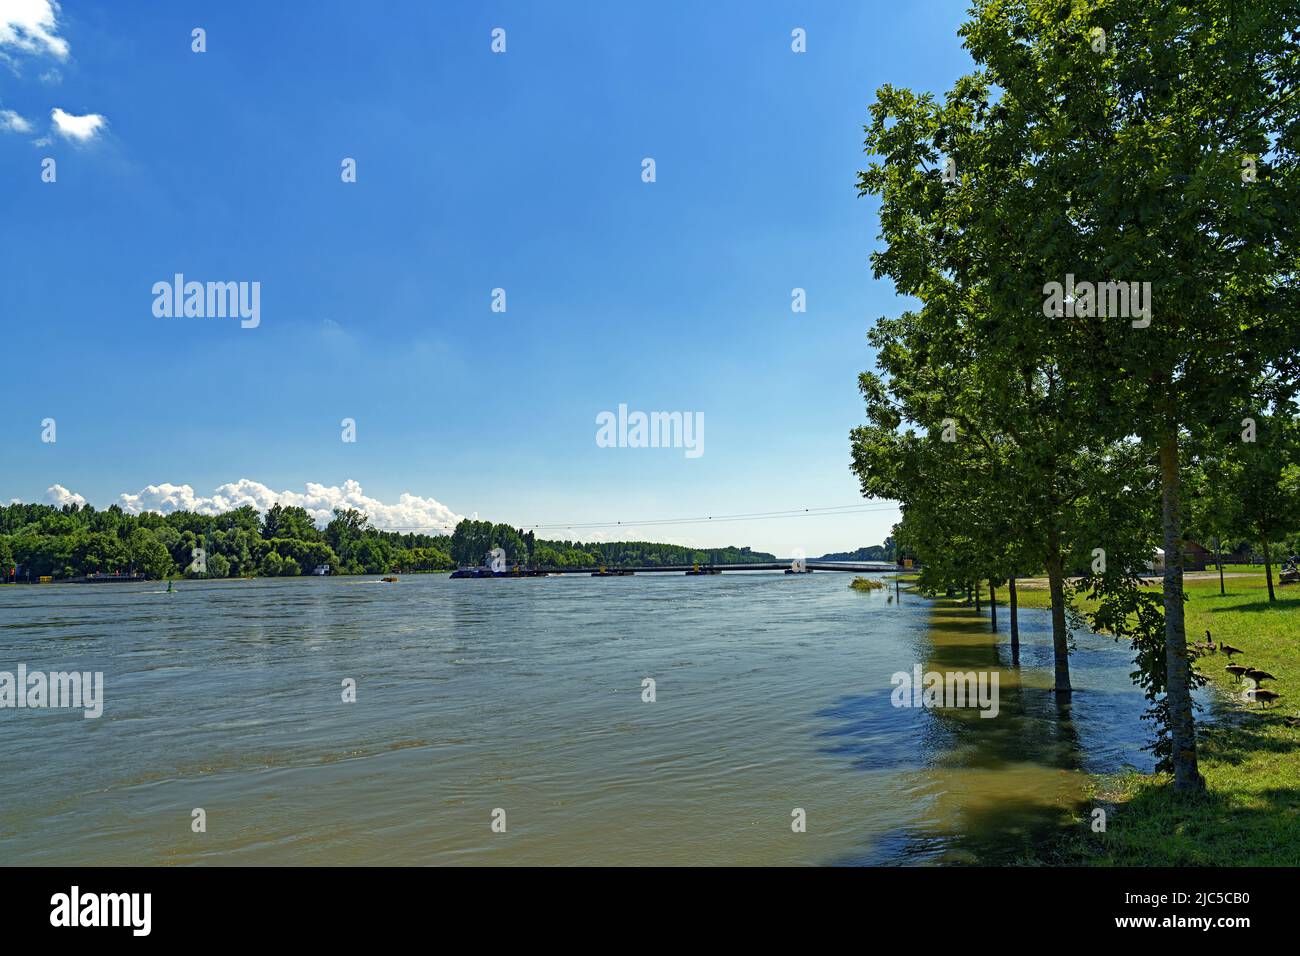 Acqua di seltz immagini e fotografie stock ad alta risoluzione - Alamy